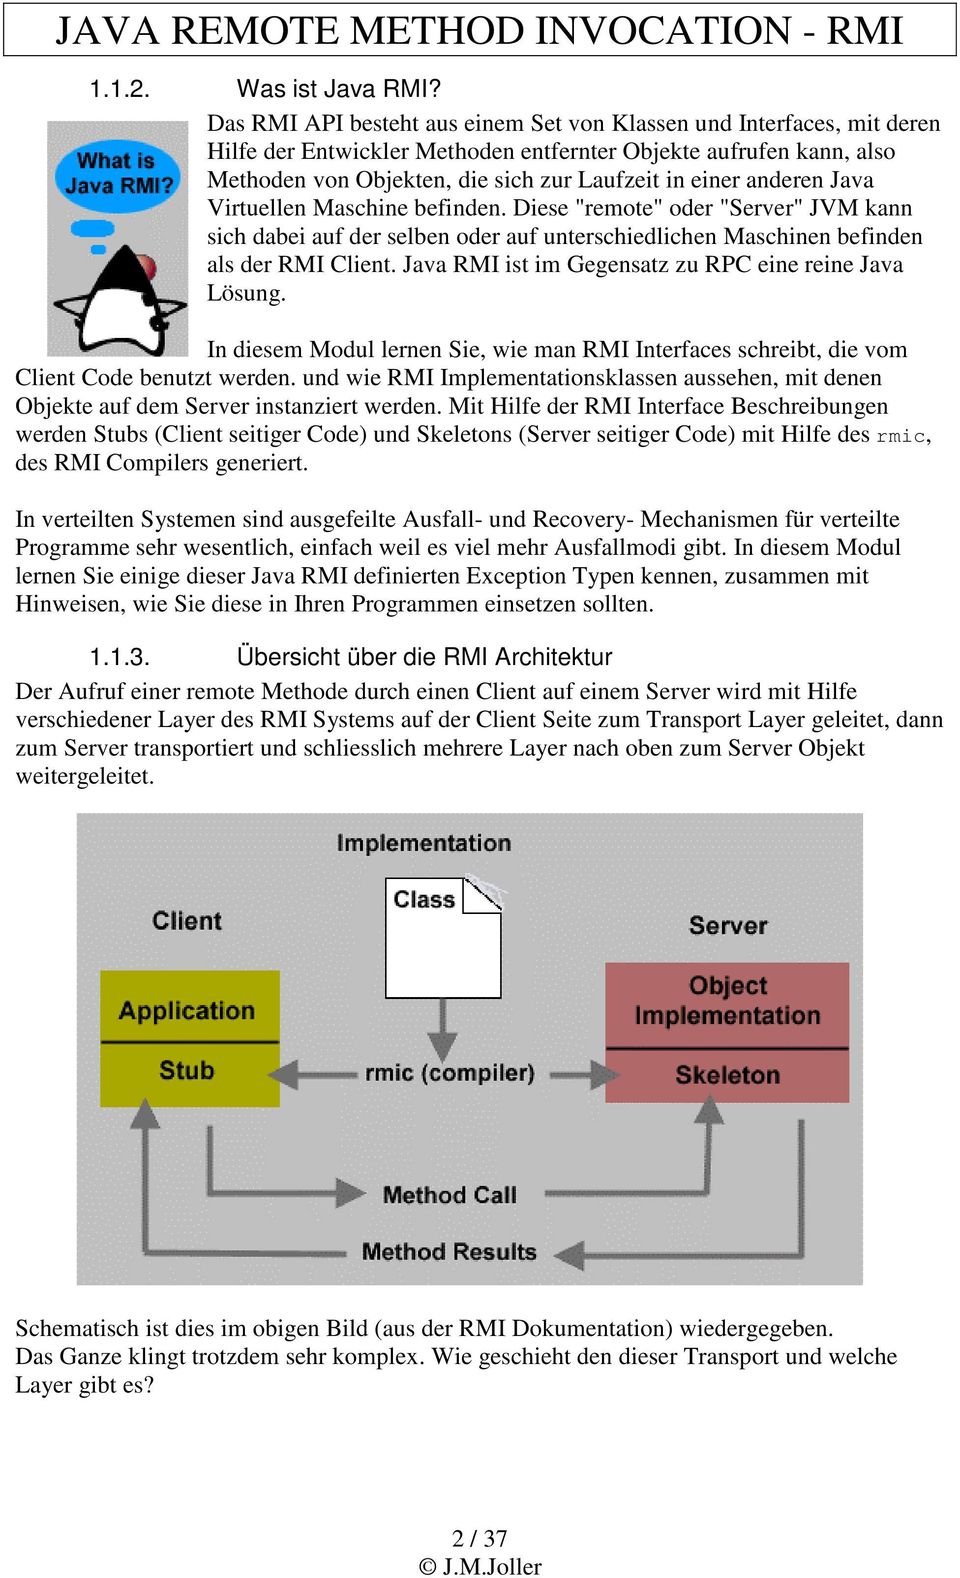 anderen Java Virtuellen Maschine befinden. Diese "remote" oder "Server" JVM kann sich dabei auf der selben oder auf unterschiedlichen Maschinen befinden als der RMI Client.